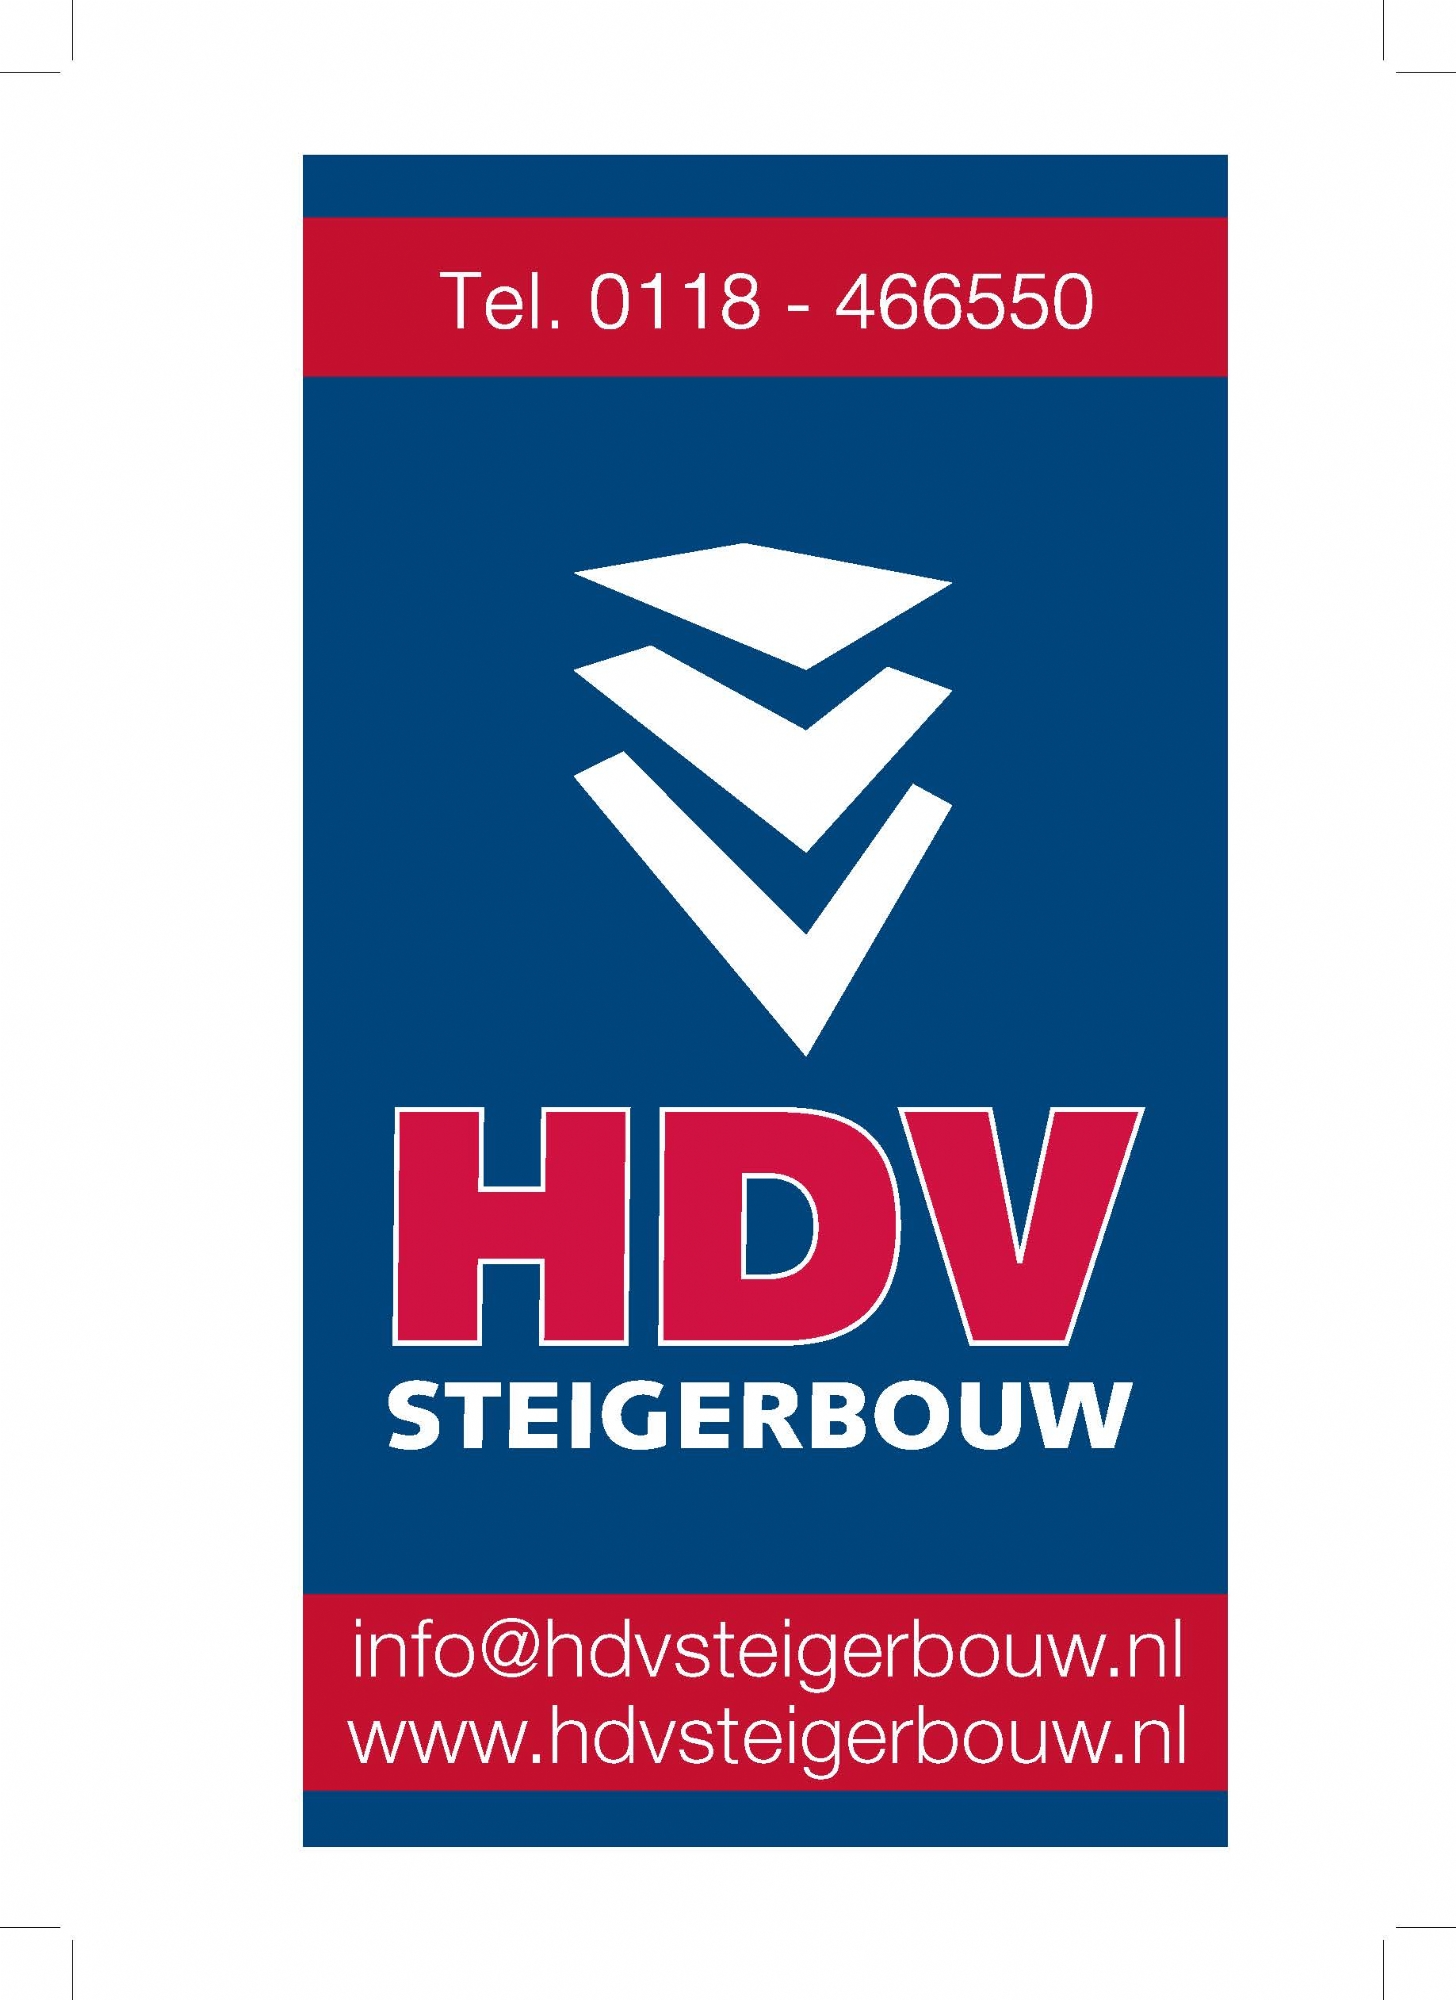 hdv_logo.jpg